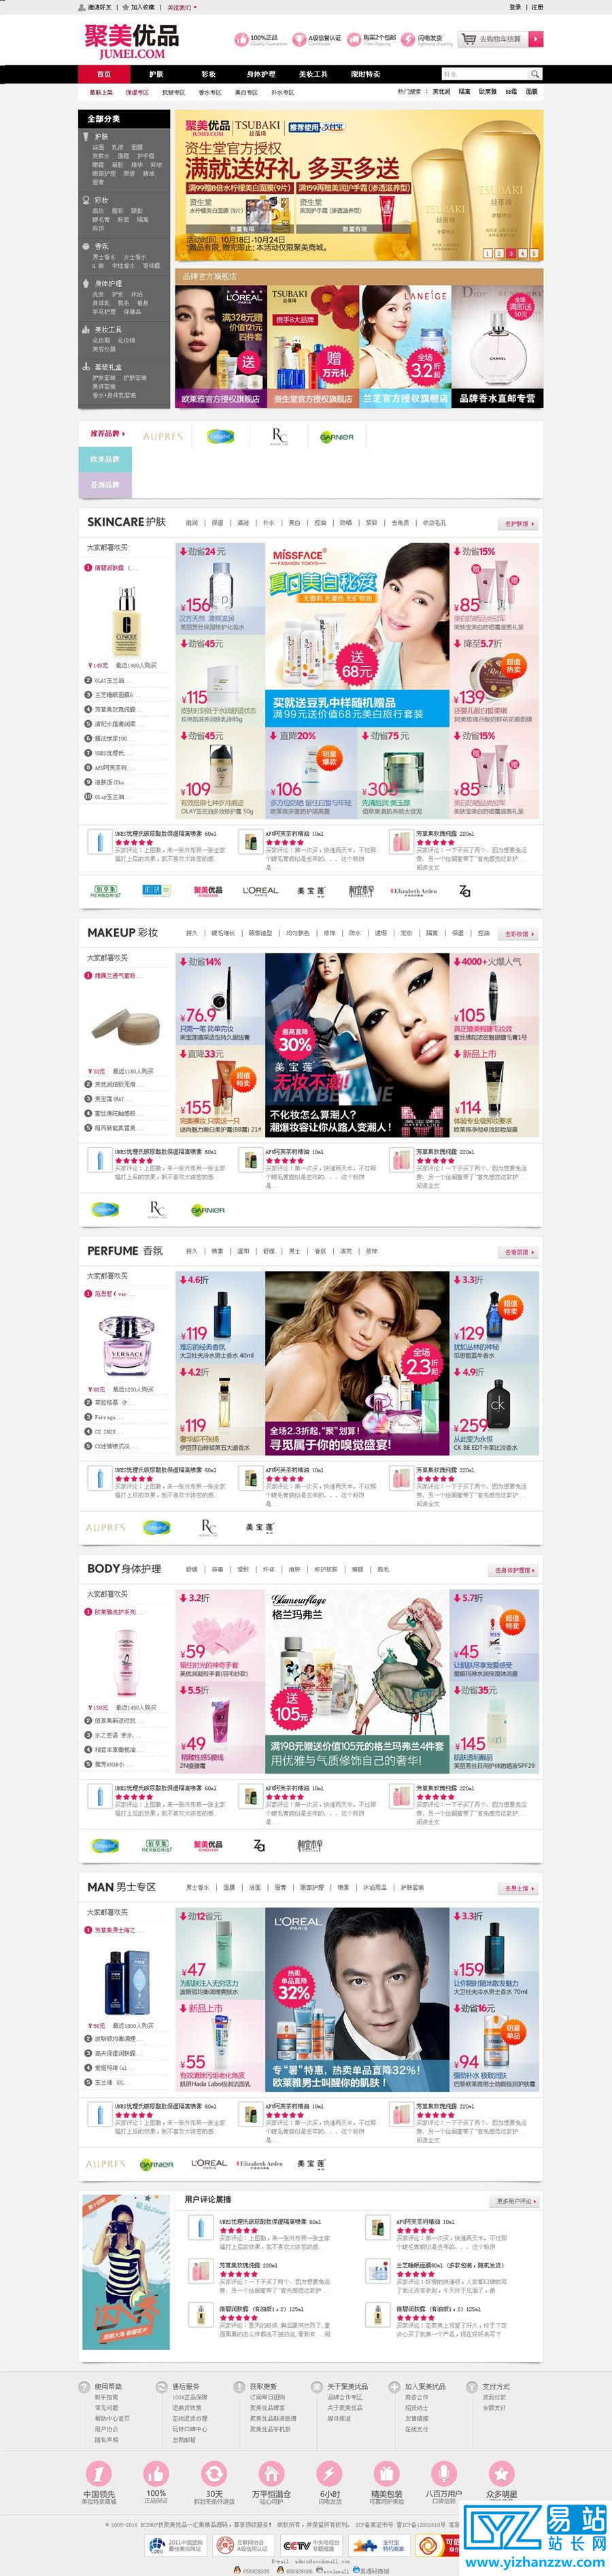 仿聚美优品模板带数据化妆品商城网站源码-易站站长网